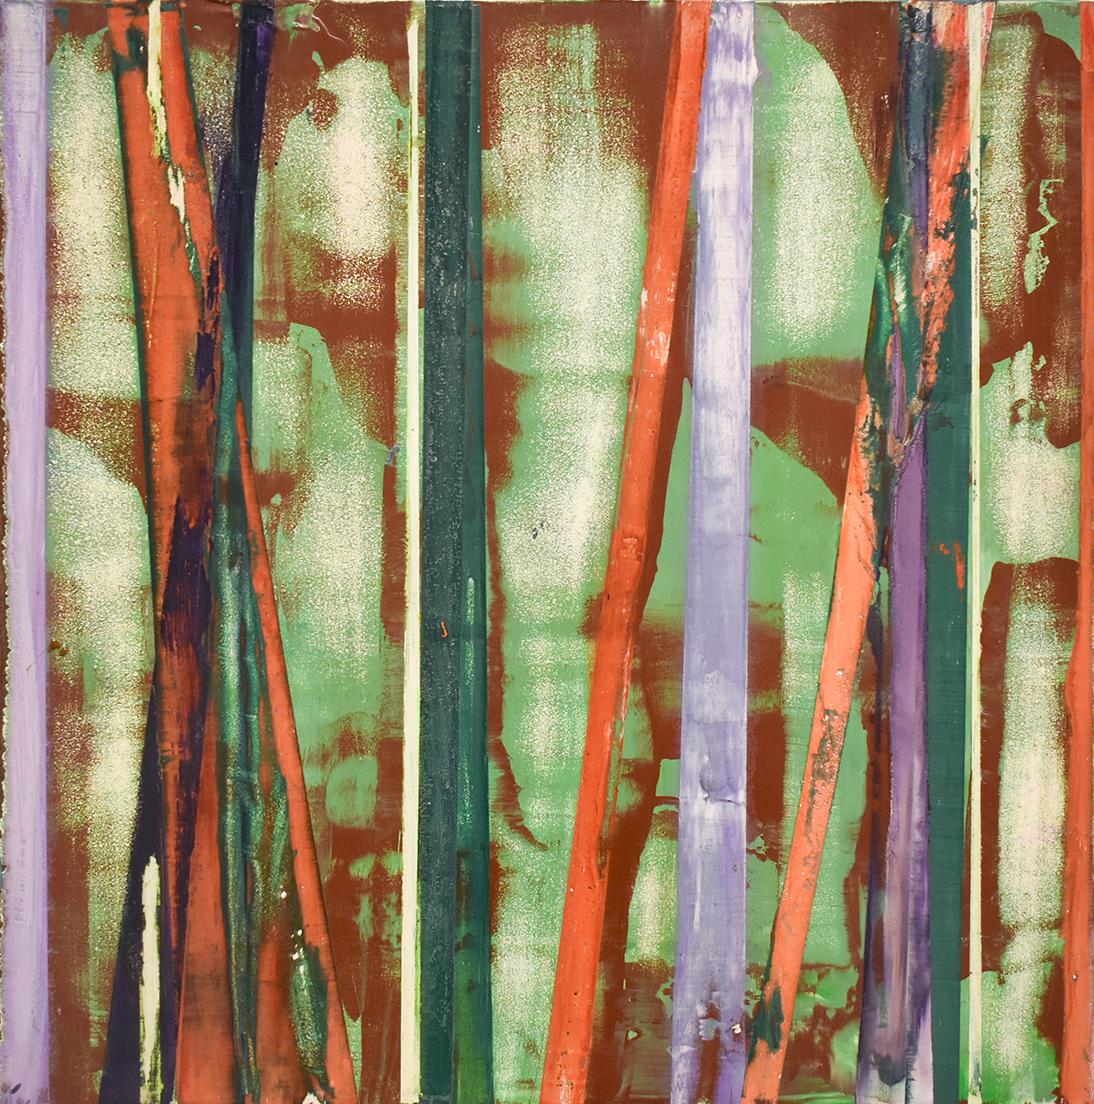 Big Little 121 (peinture abstraite géométrique multicolore en couches superposées sur supports mixtes) - Mixed Media Art de Vincent Pomilio